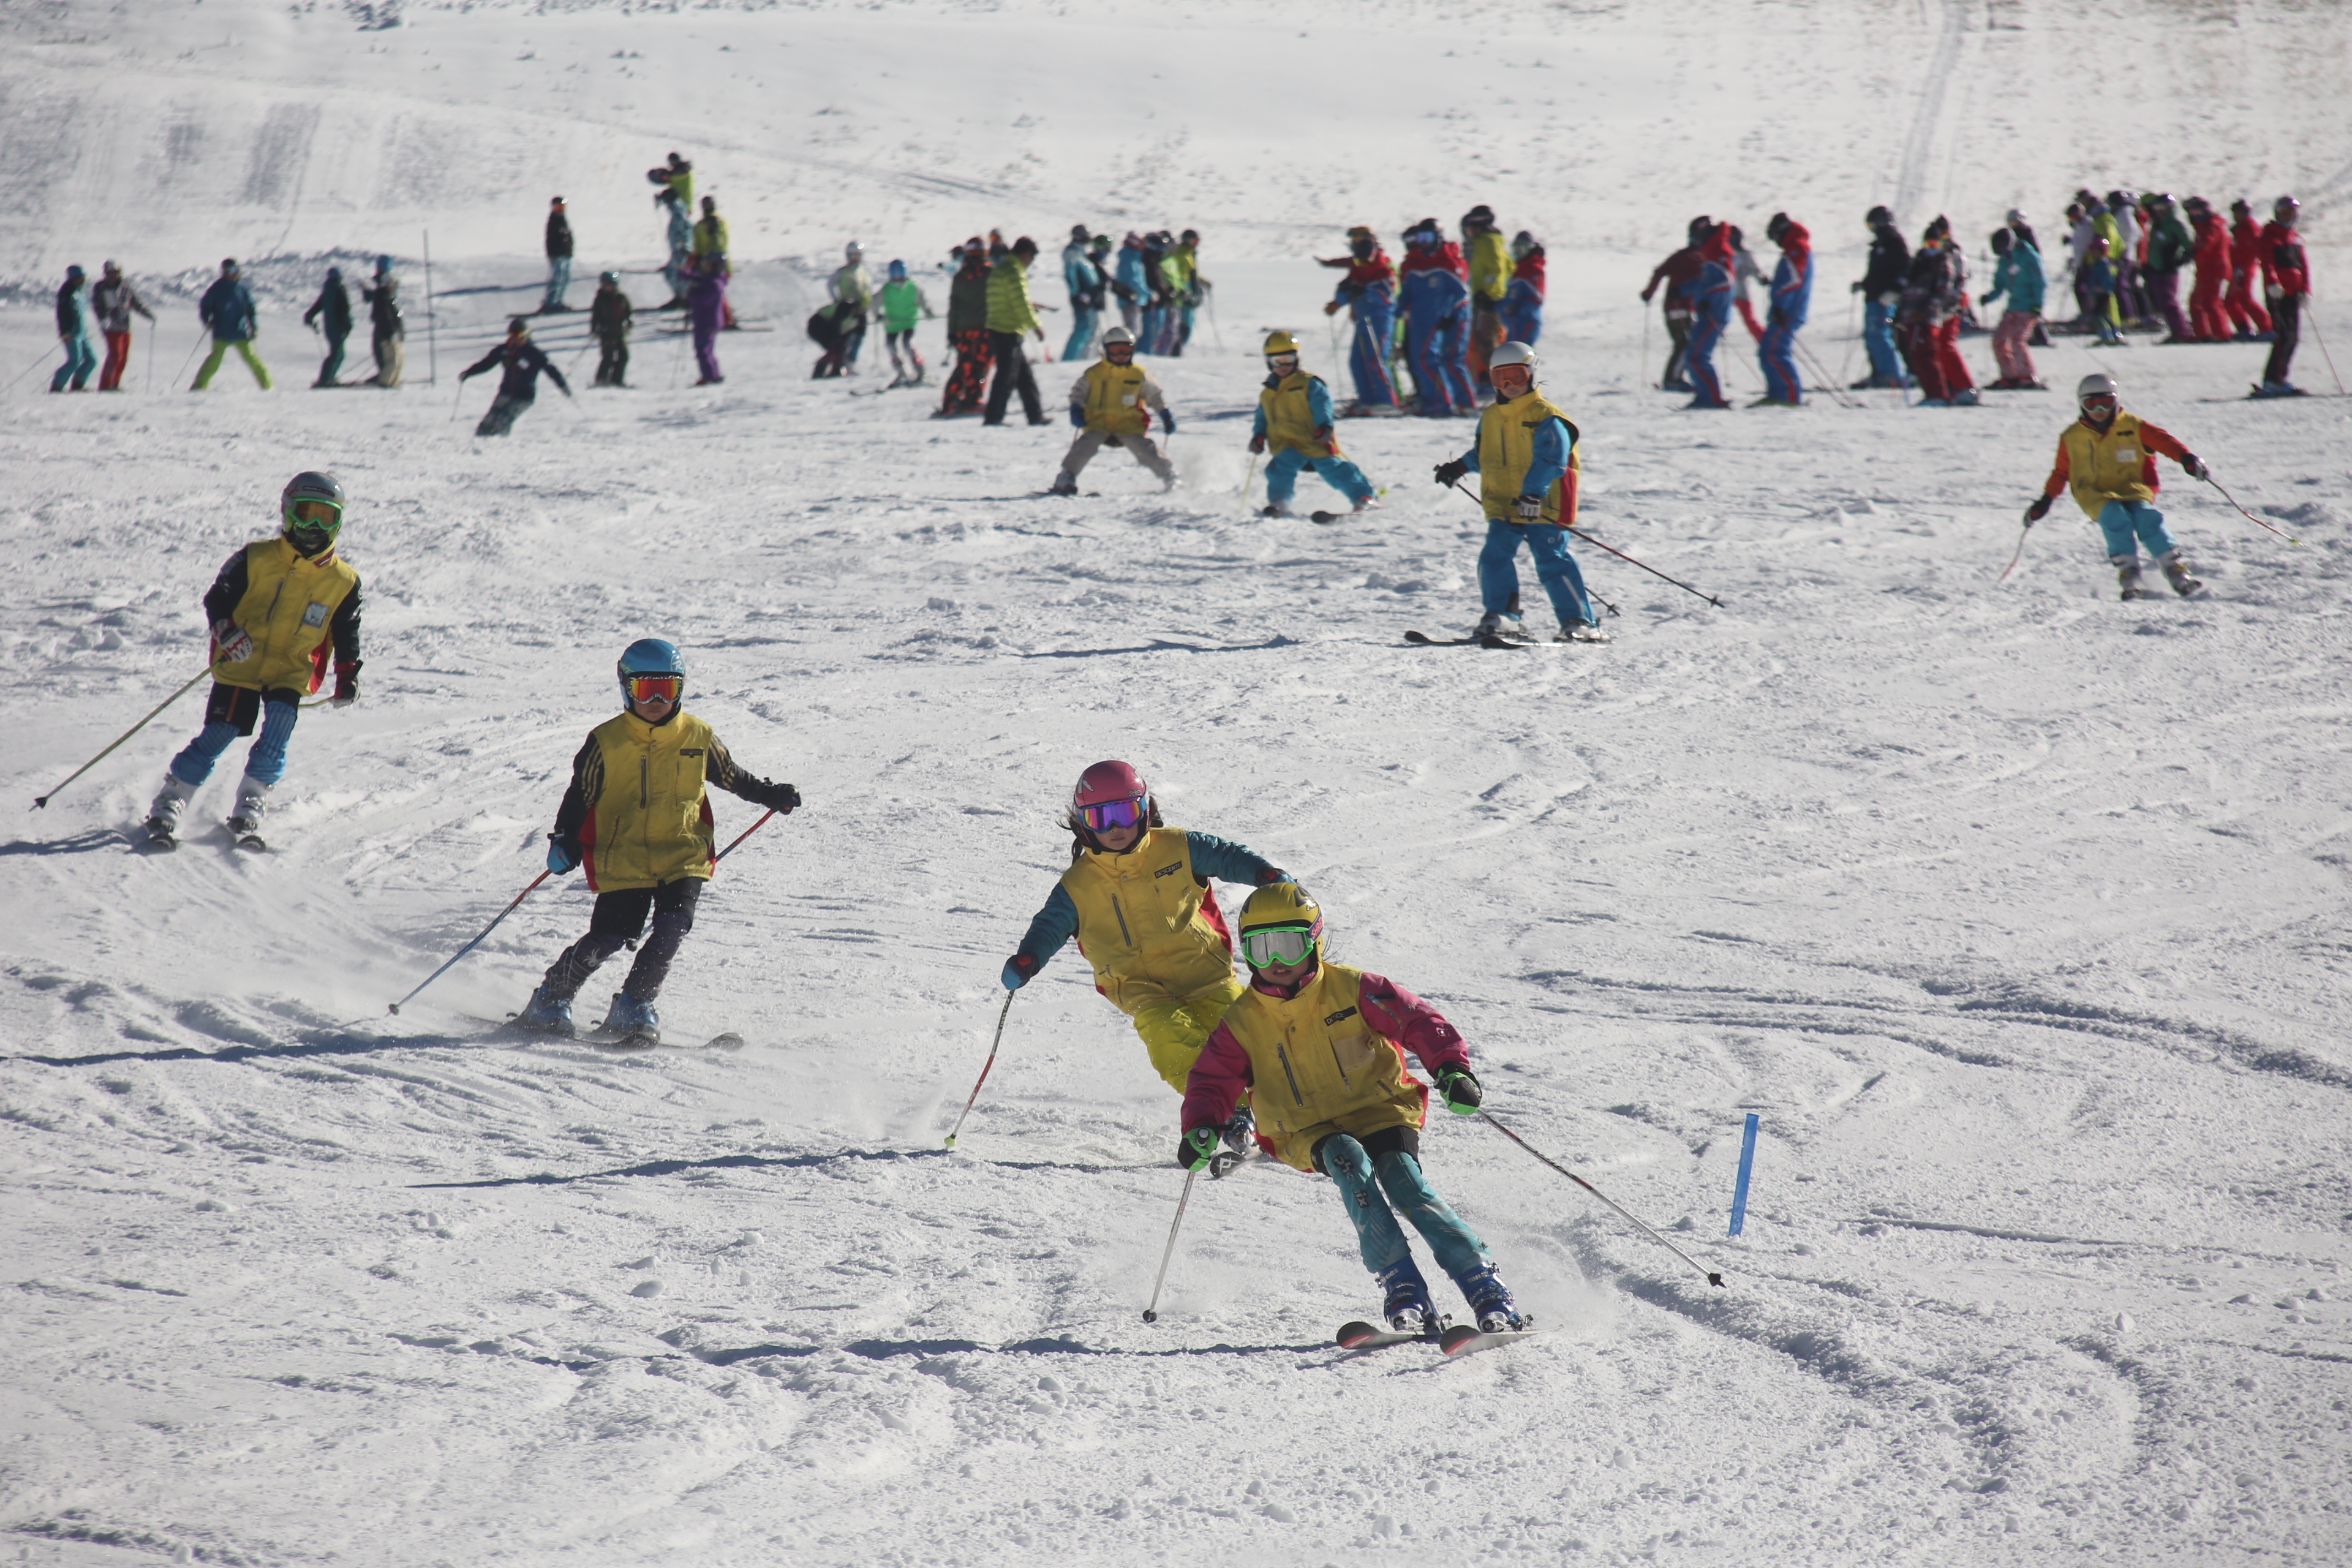 【2021年中止】志賀高原統一初滑り・スキー場開き祭